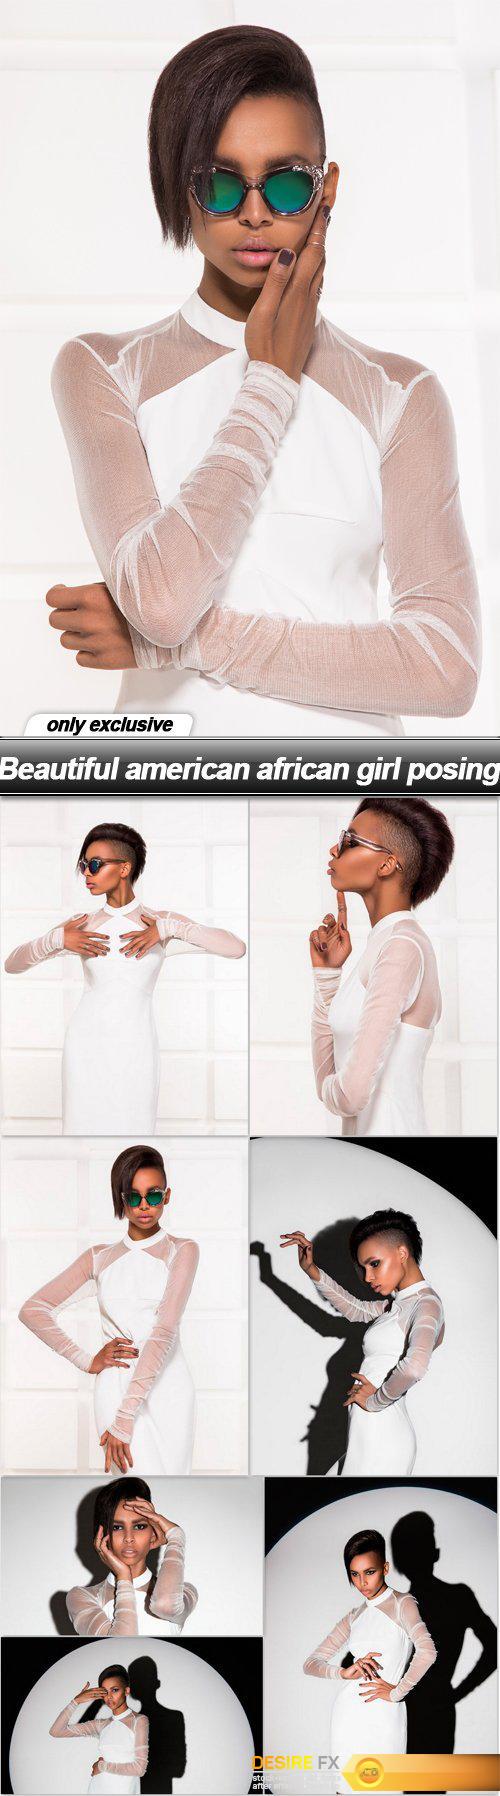 Beautiful american african girl posing - 8 UHQ JPEG